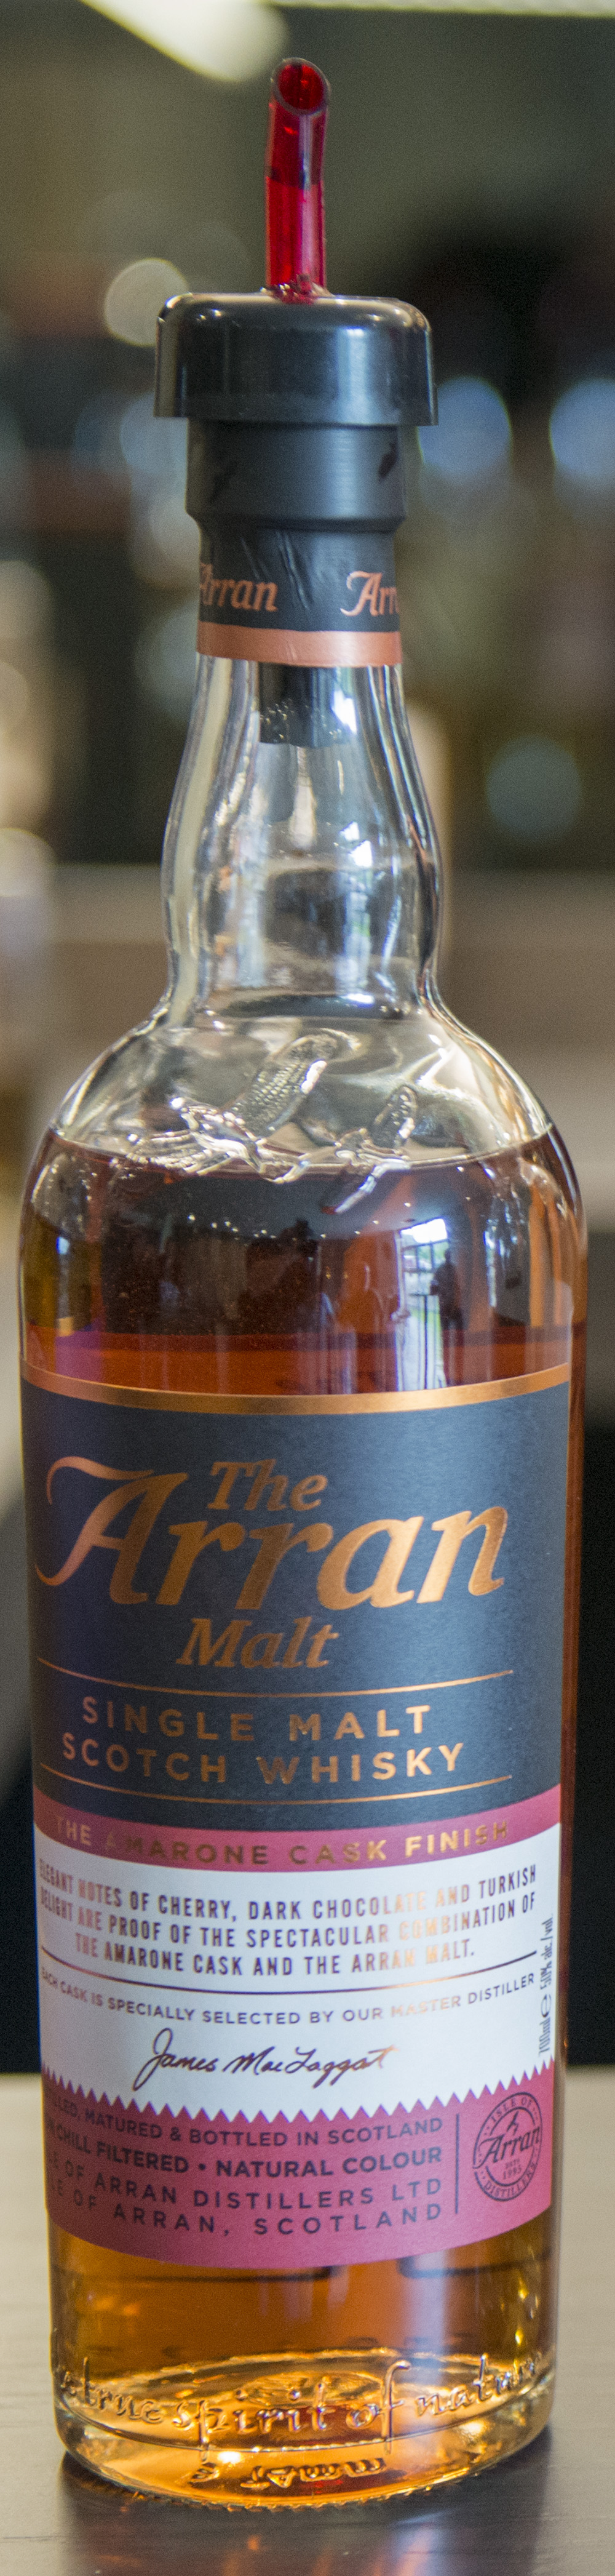 Billede: DSC_2298 - Arran - The Amarone Cask Finish.jpg